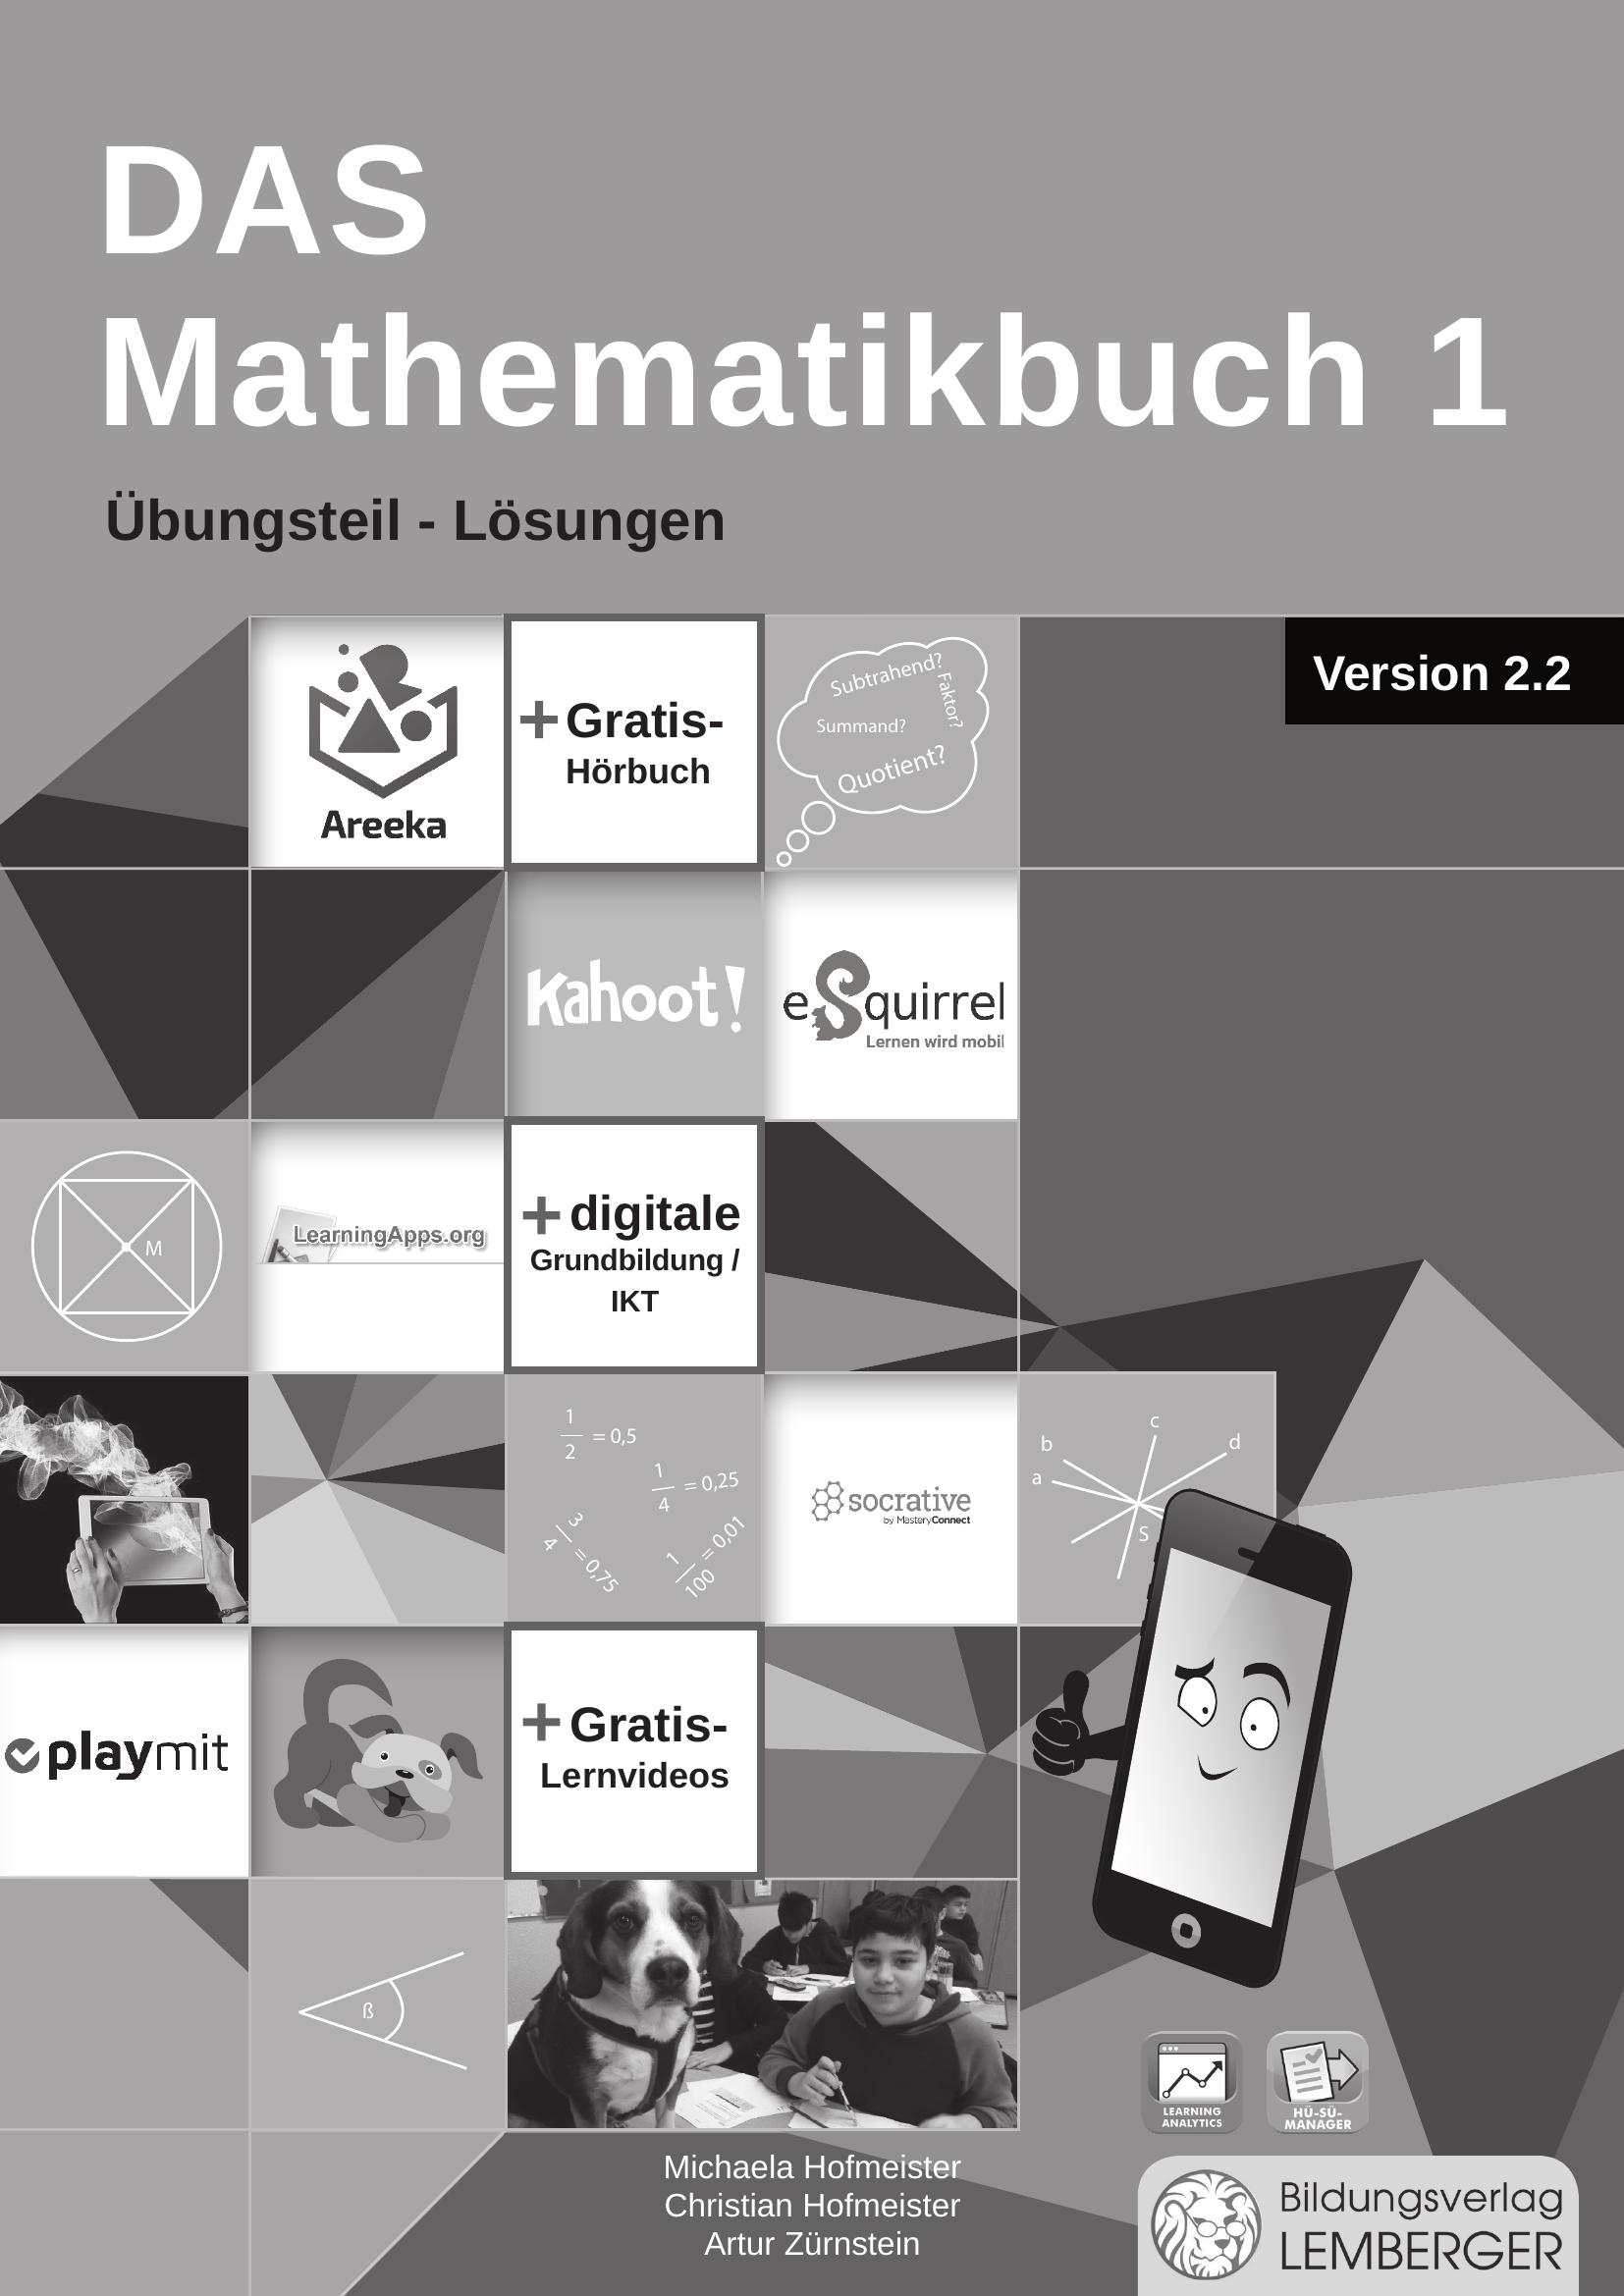 DAS Mathematikbuch 1 - Übungsteil IKT_Version 2.2 - Lösungen